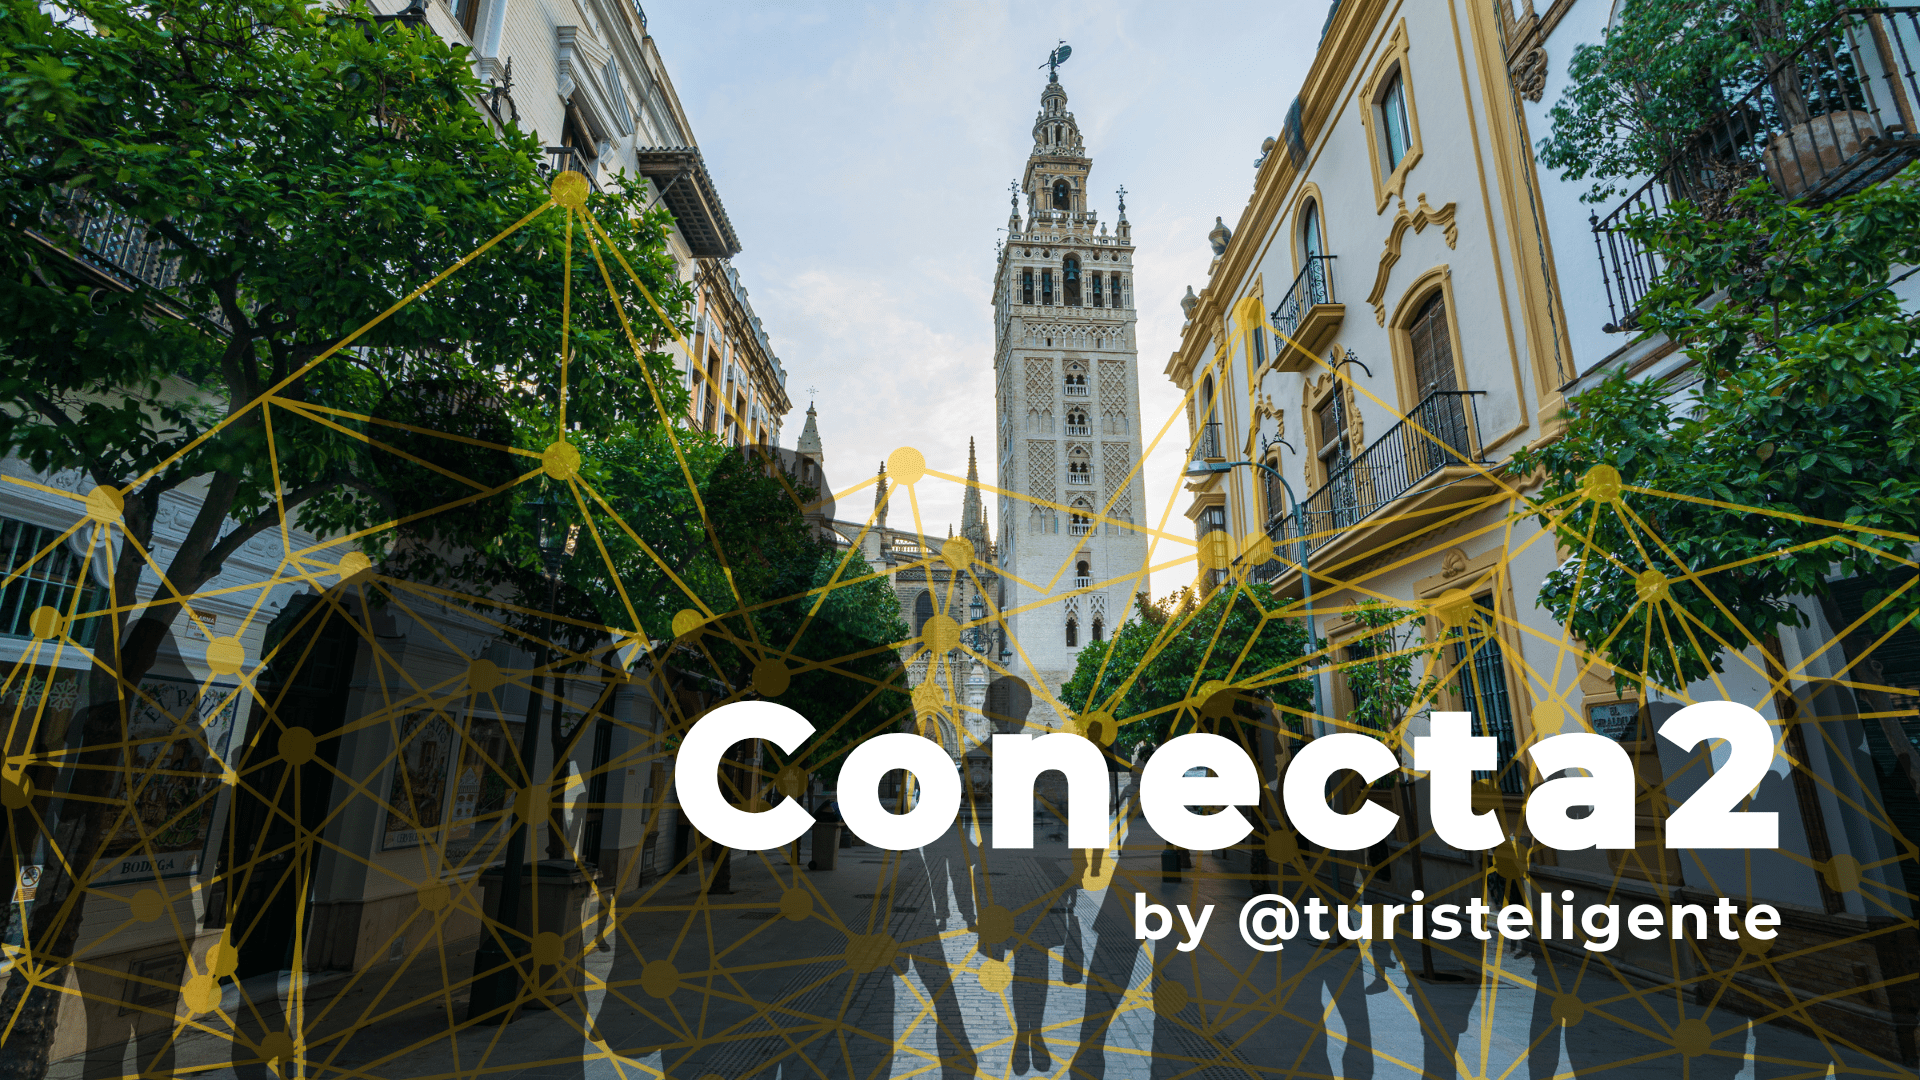 Conecta2 en el Destino Inteligente de Sevilla